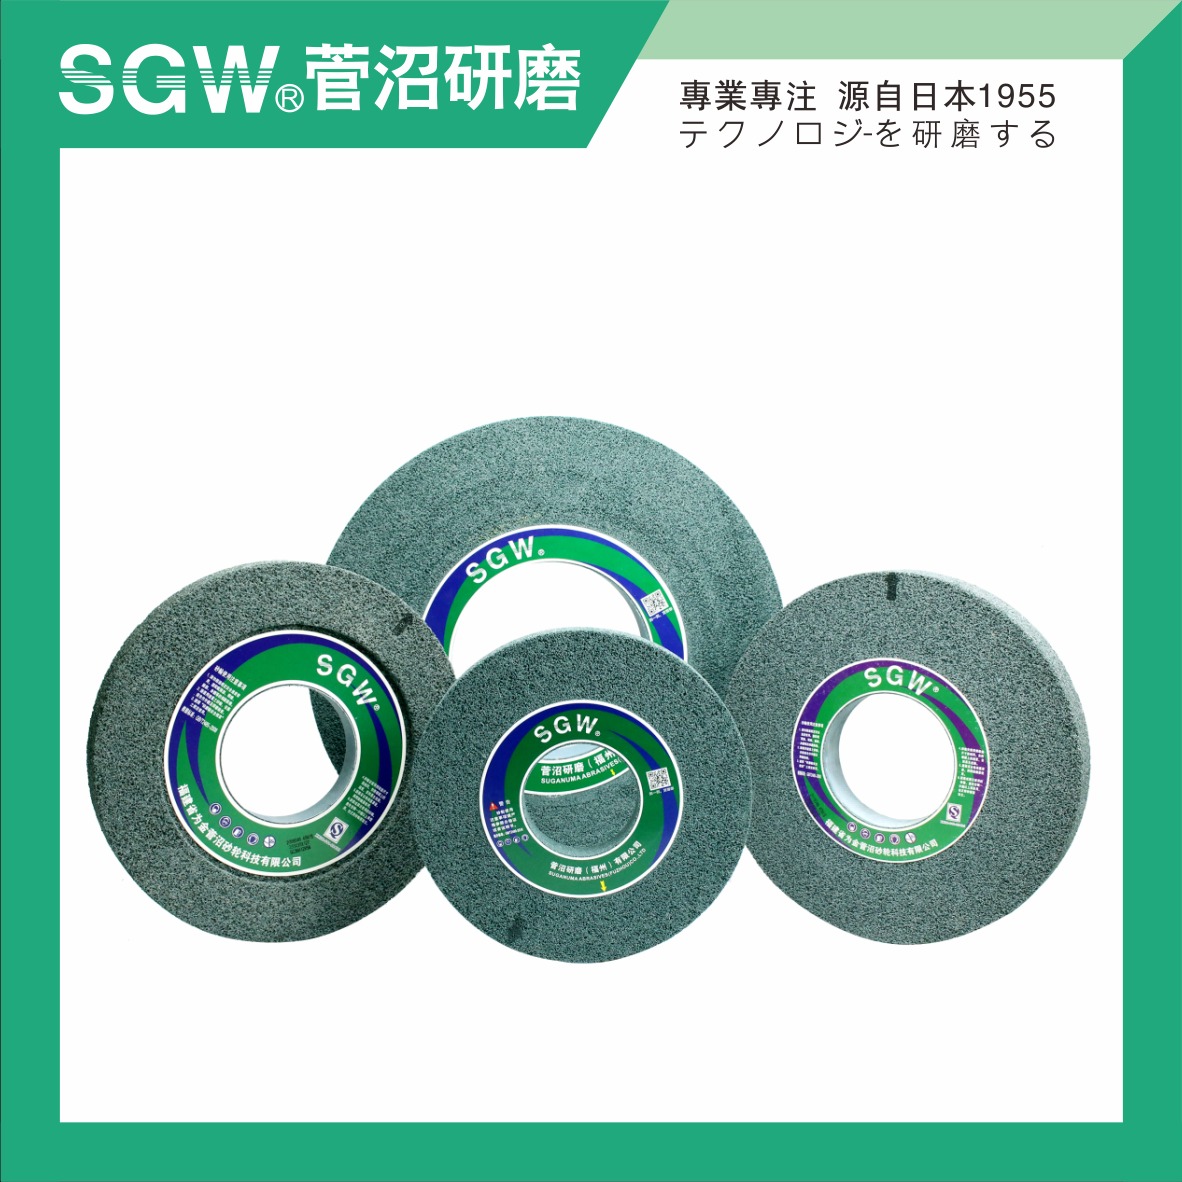 大气孔砂轮 绿碳GC 陶瓷 磨橡胶 EVA 皮革 塑胶 海绵 软性材料 不堵塞